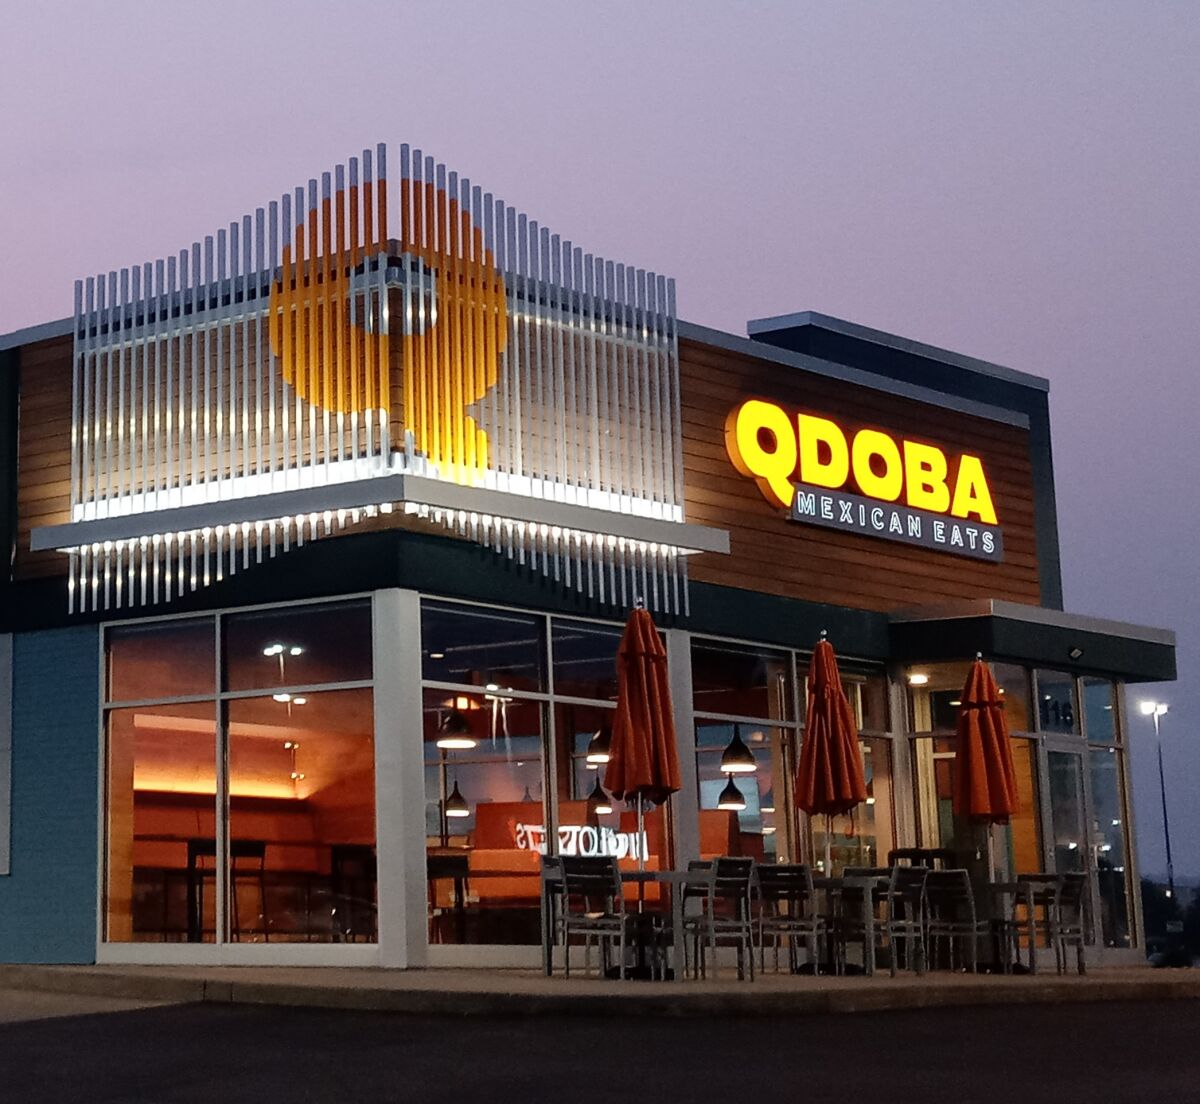 A Qdoba restaurant.